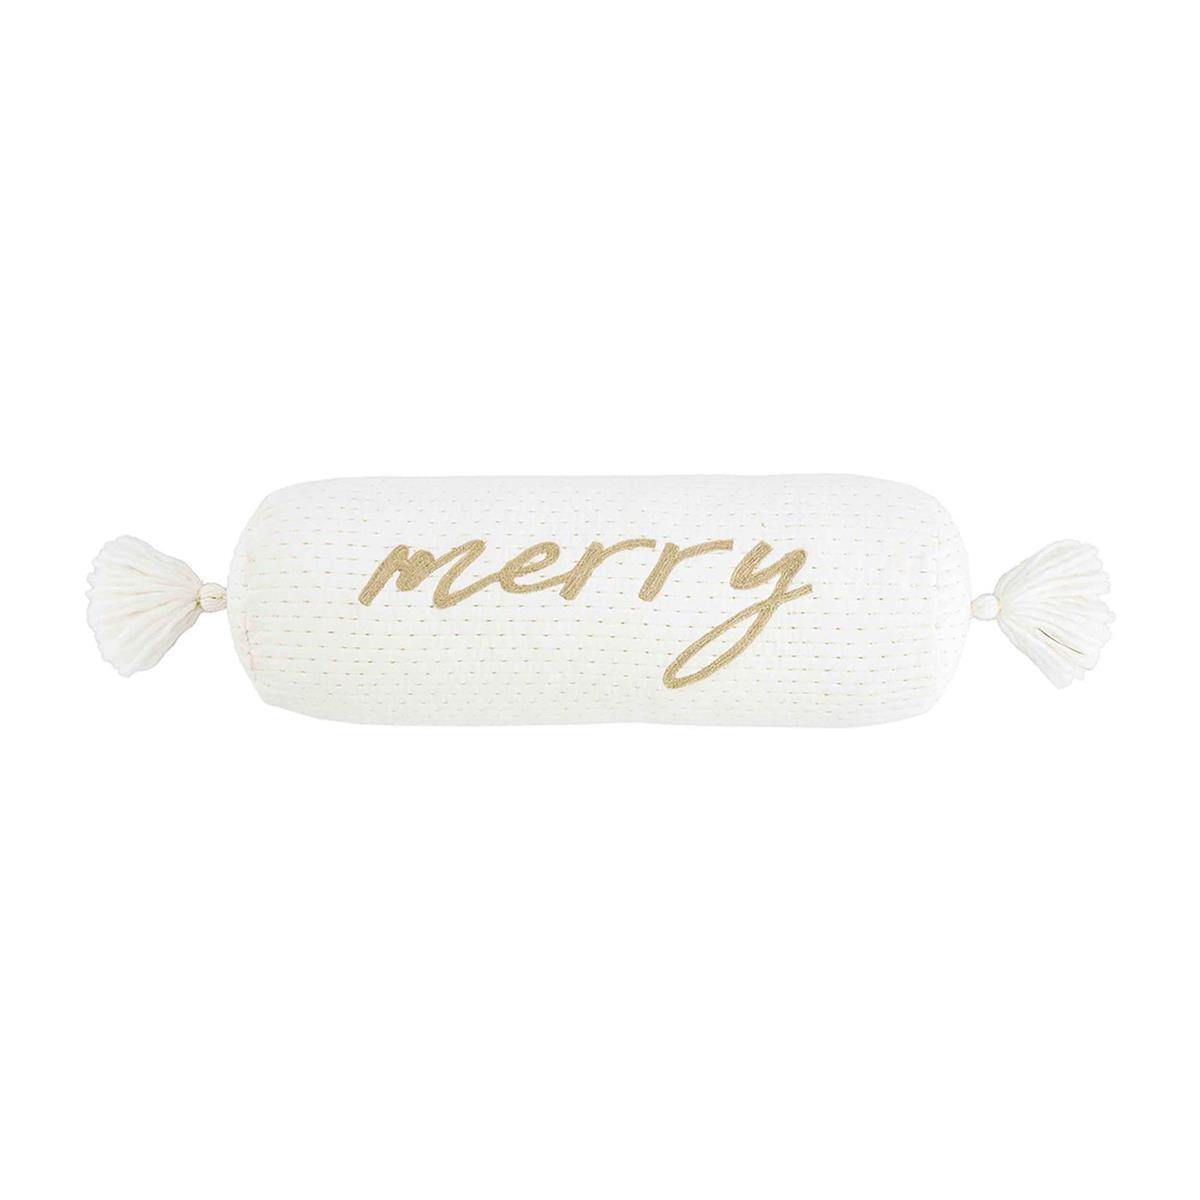 Mud Pie - Merry Velvet Bolster Pillow with Tassels, 24